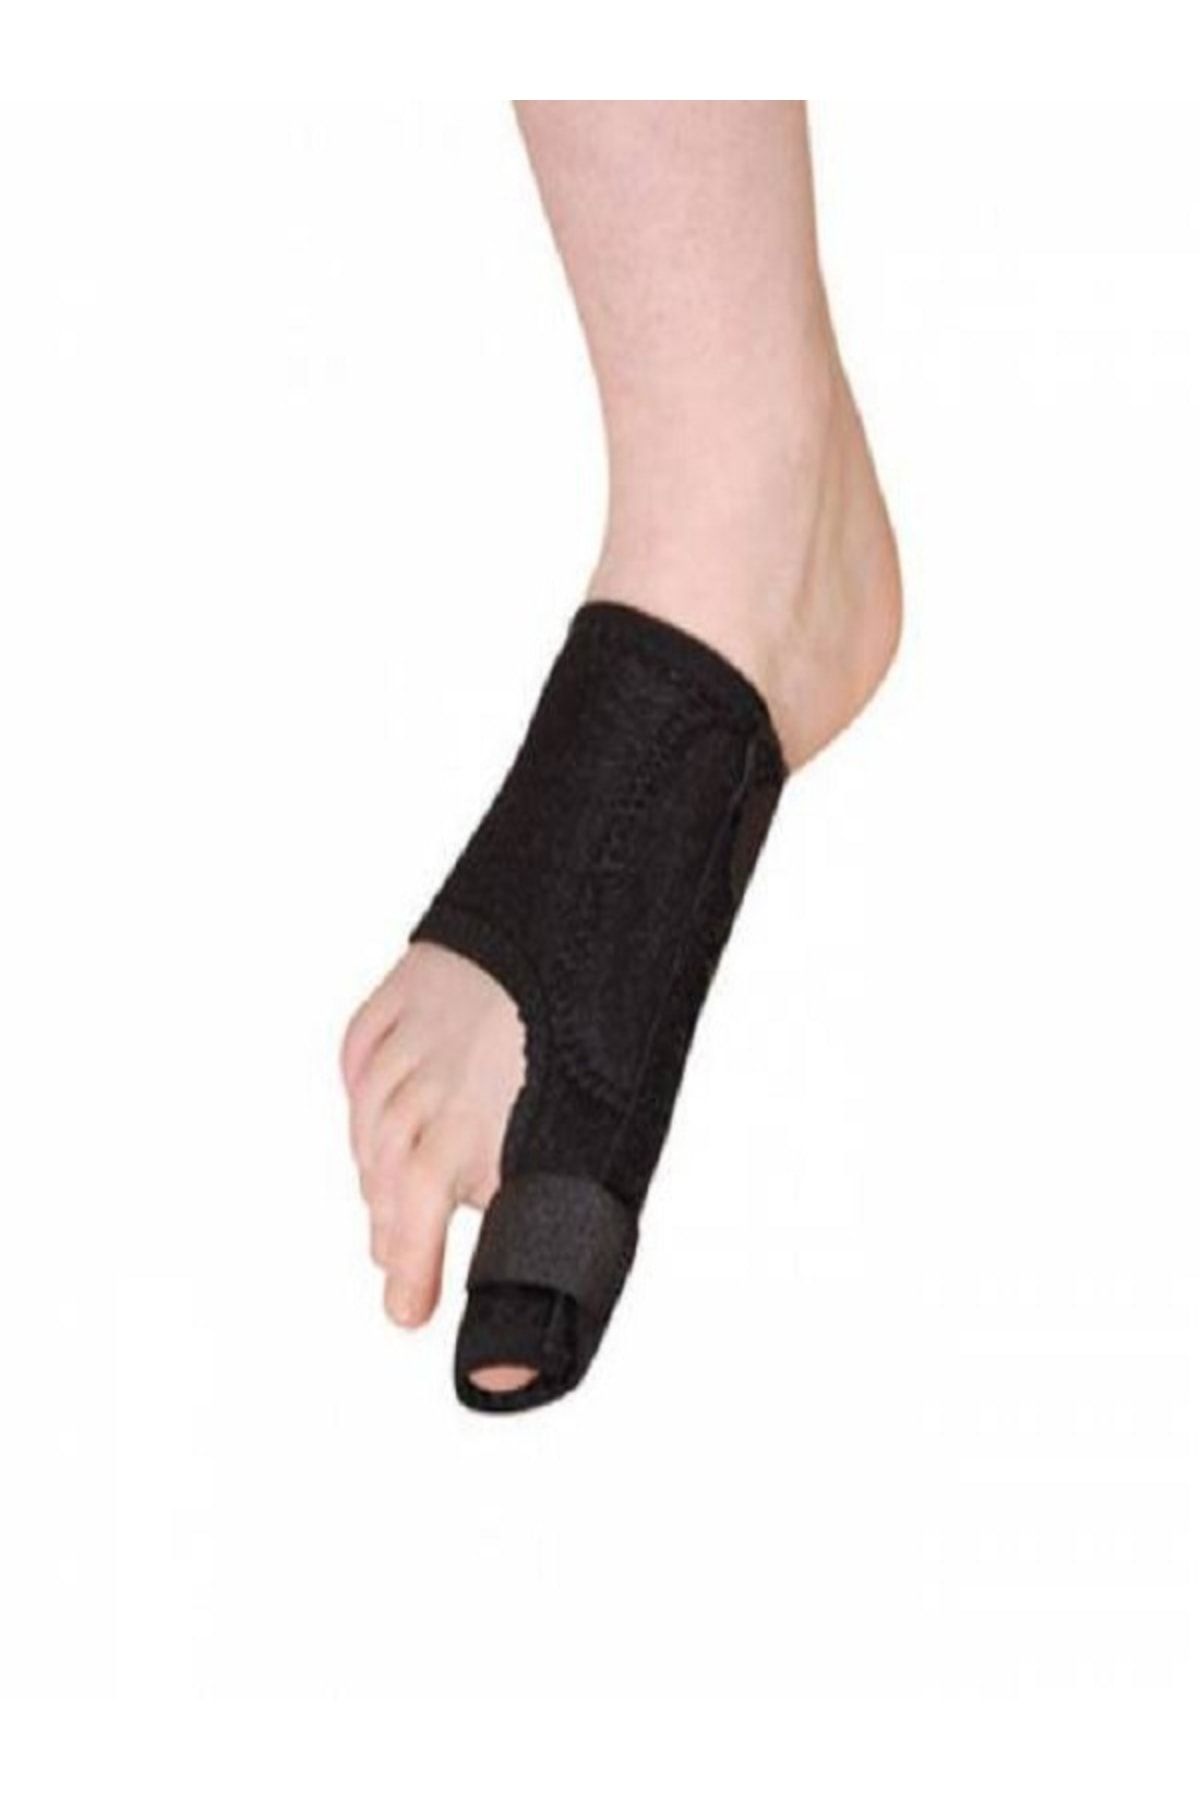 Ankaflex 1 Çift Ayak Baş Parmak Kemik Çıkıntısı Için Aparat Ayak Parmağı Bunyonu Ayak Ateli Halluks Valgus